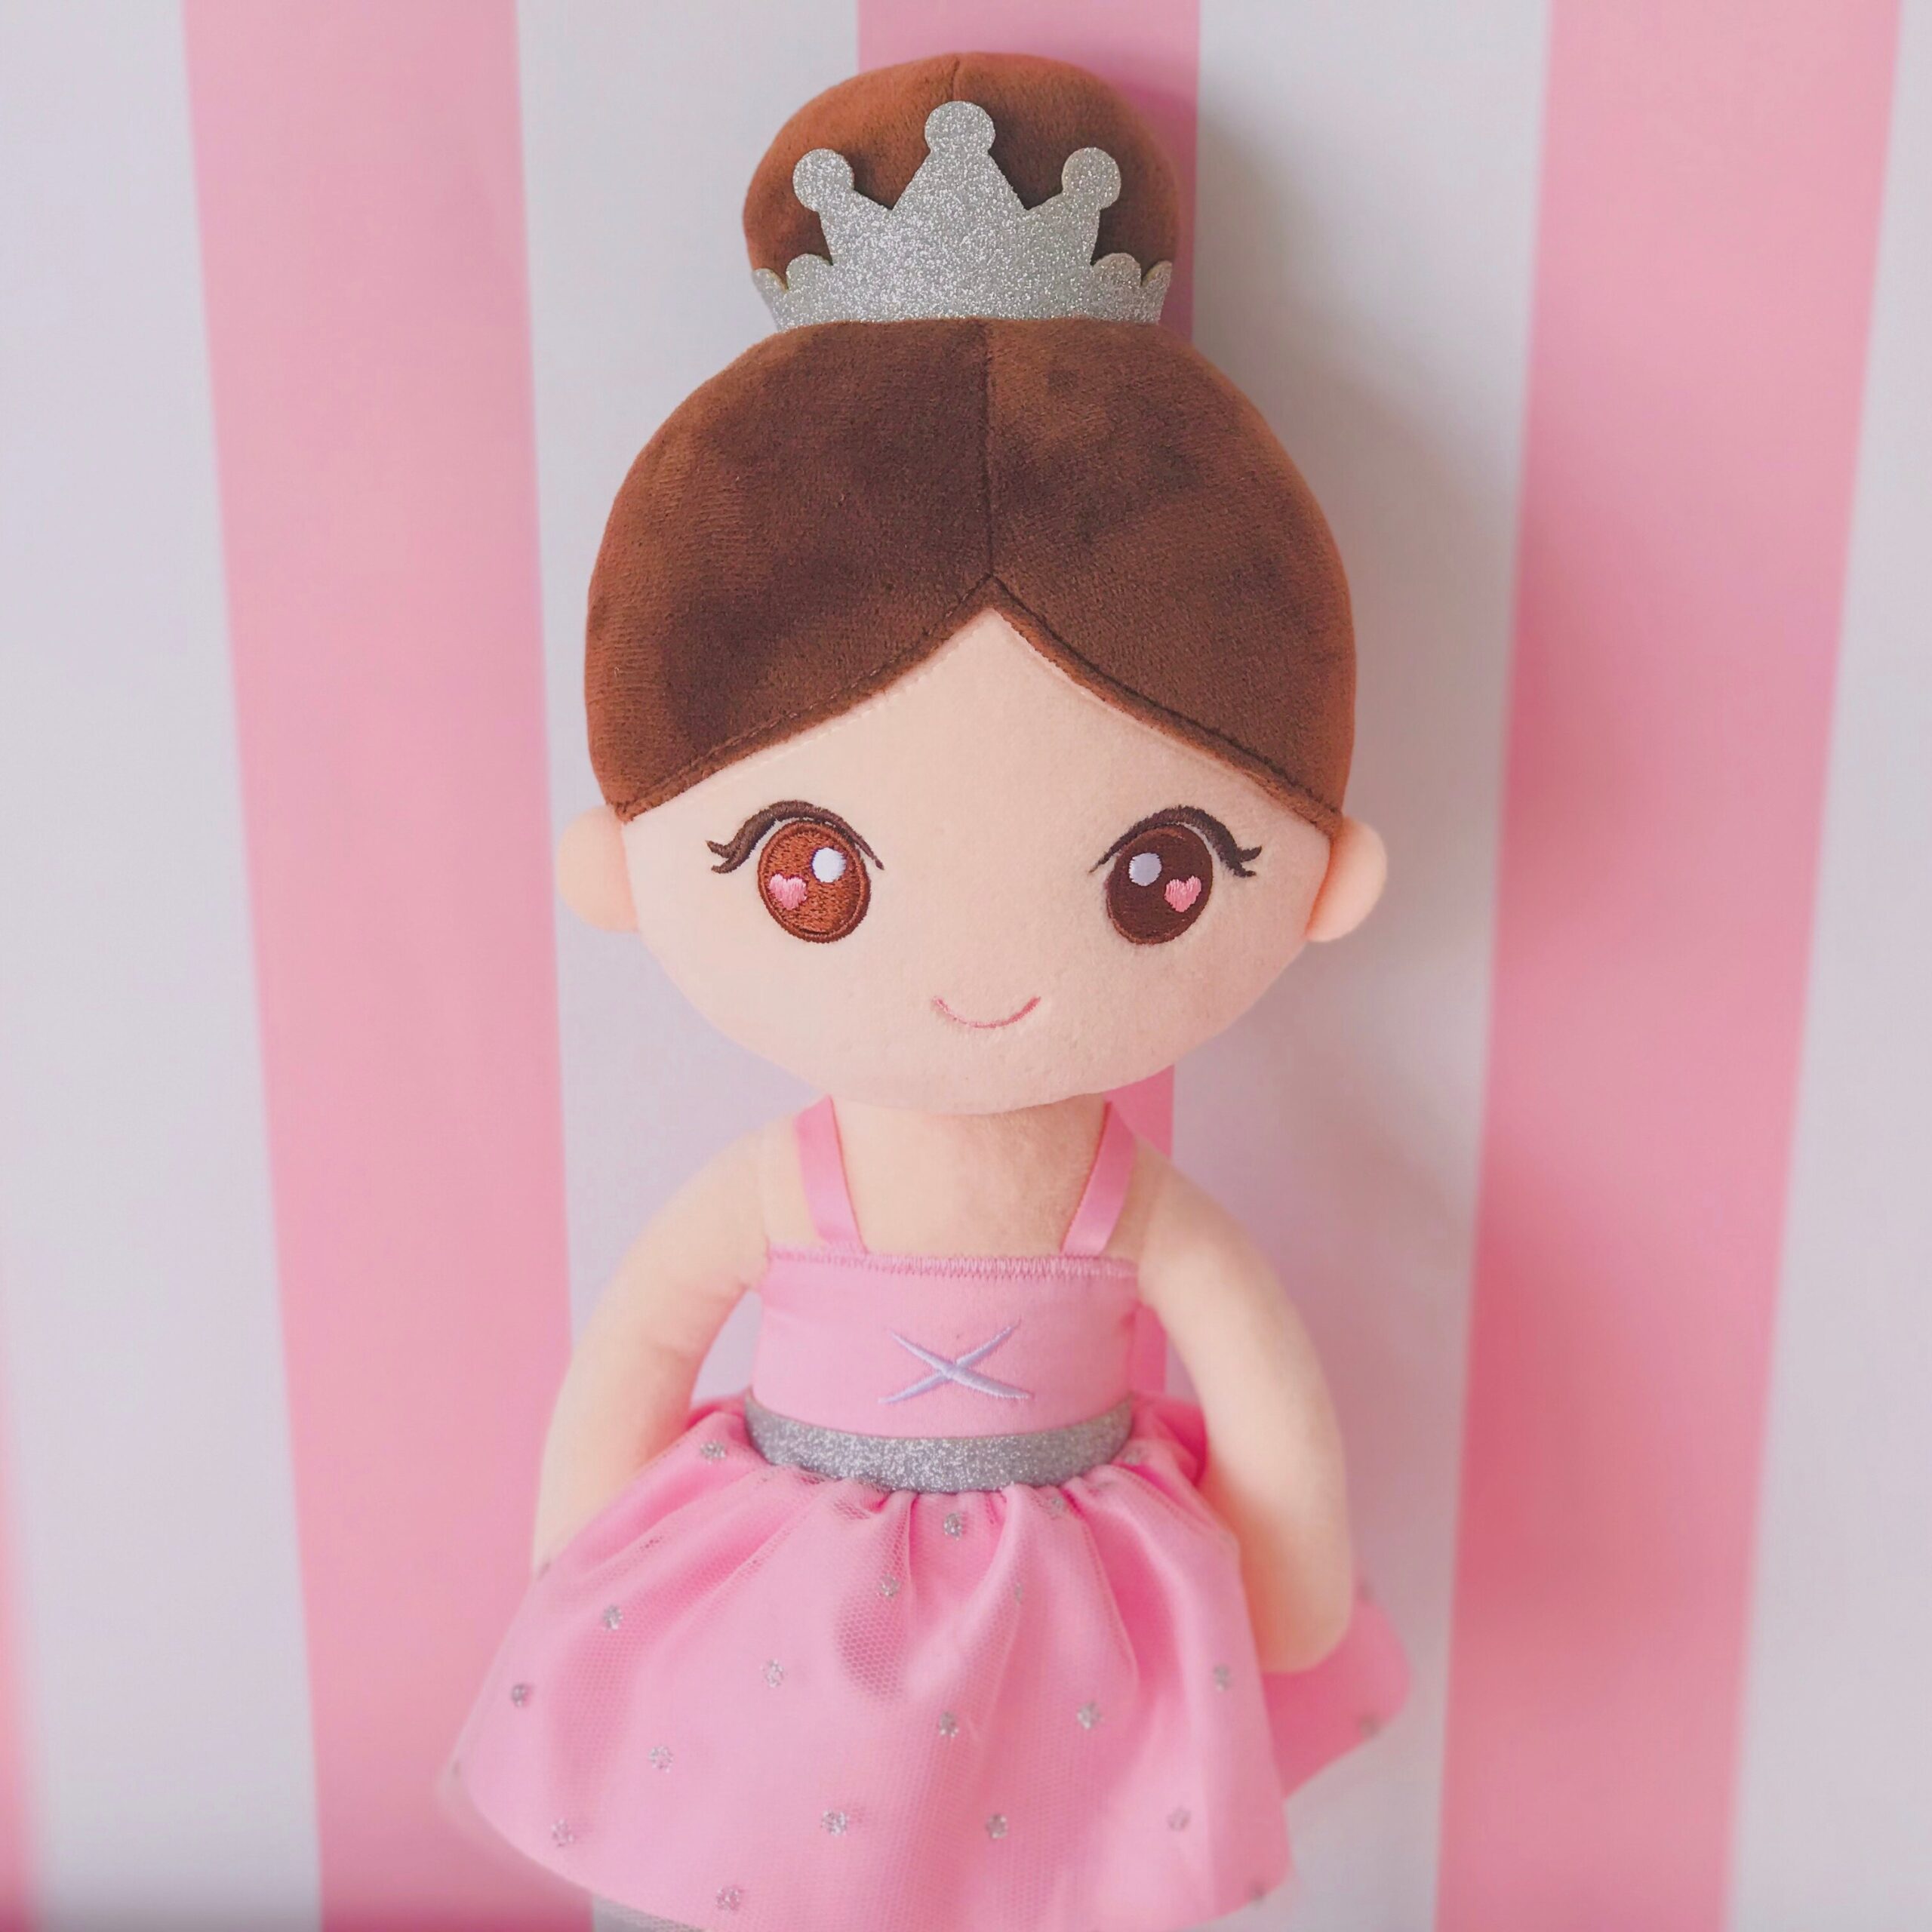 Gloveleya Plush Toys 2020 new design Ballet Dancer Dolls  Dreaming Girl Gift for Kids soft toys birthday gift